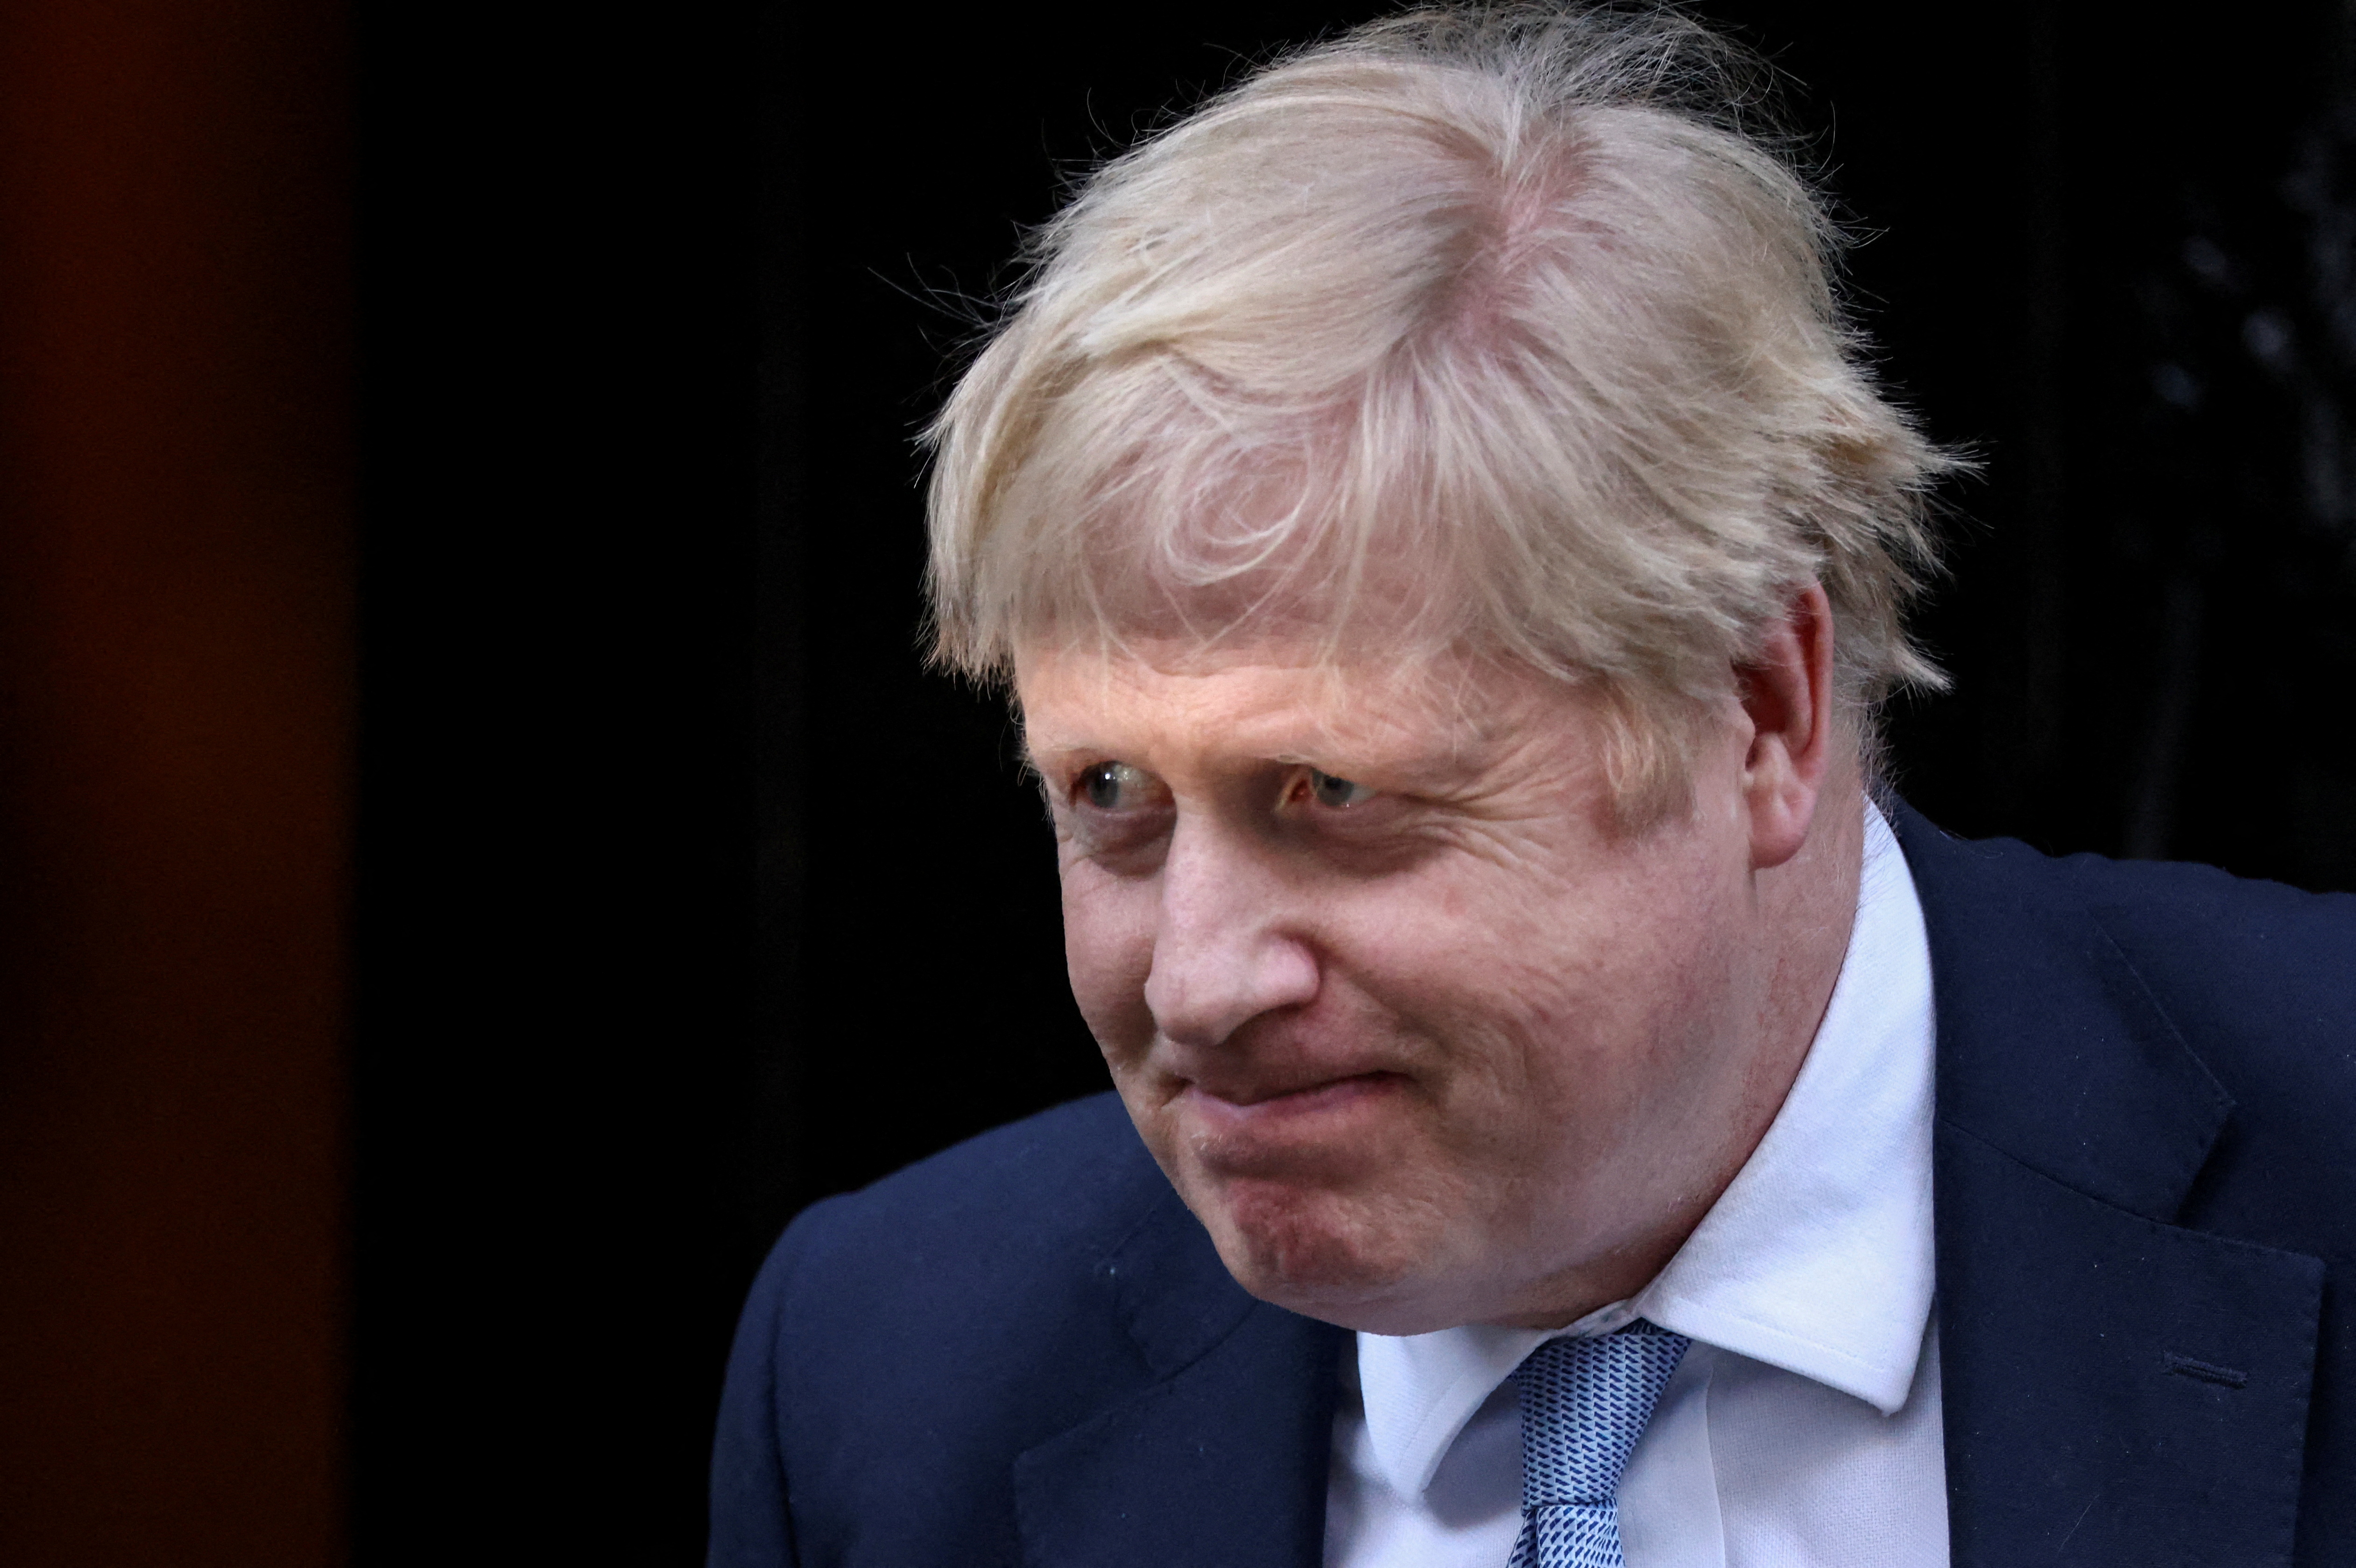 El primer ministro británico, Boris Johnson, camina frente al número 10 de Downing Street en Londres, Gran Bretaña, el 31 de enero de 2022. REUTERS/Henry Nicholls